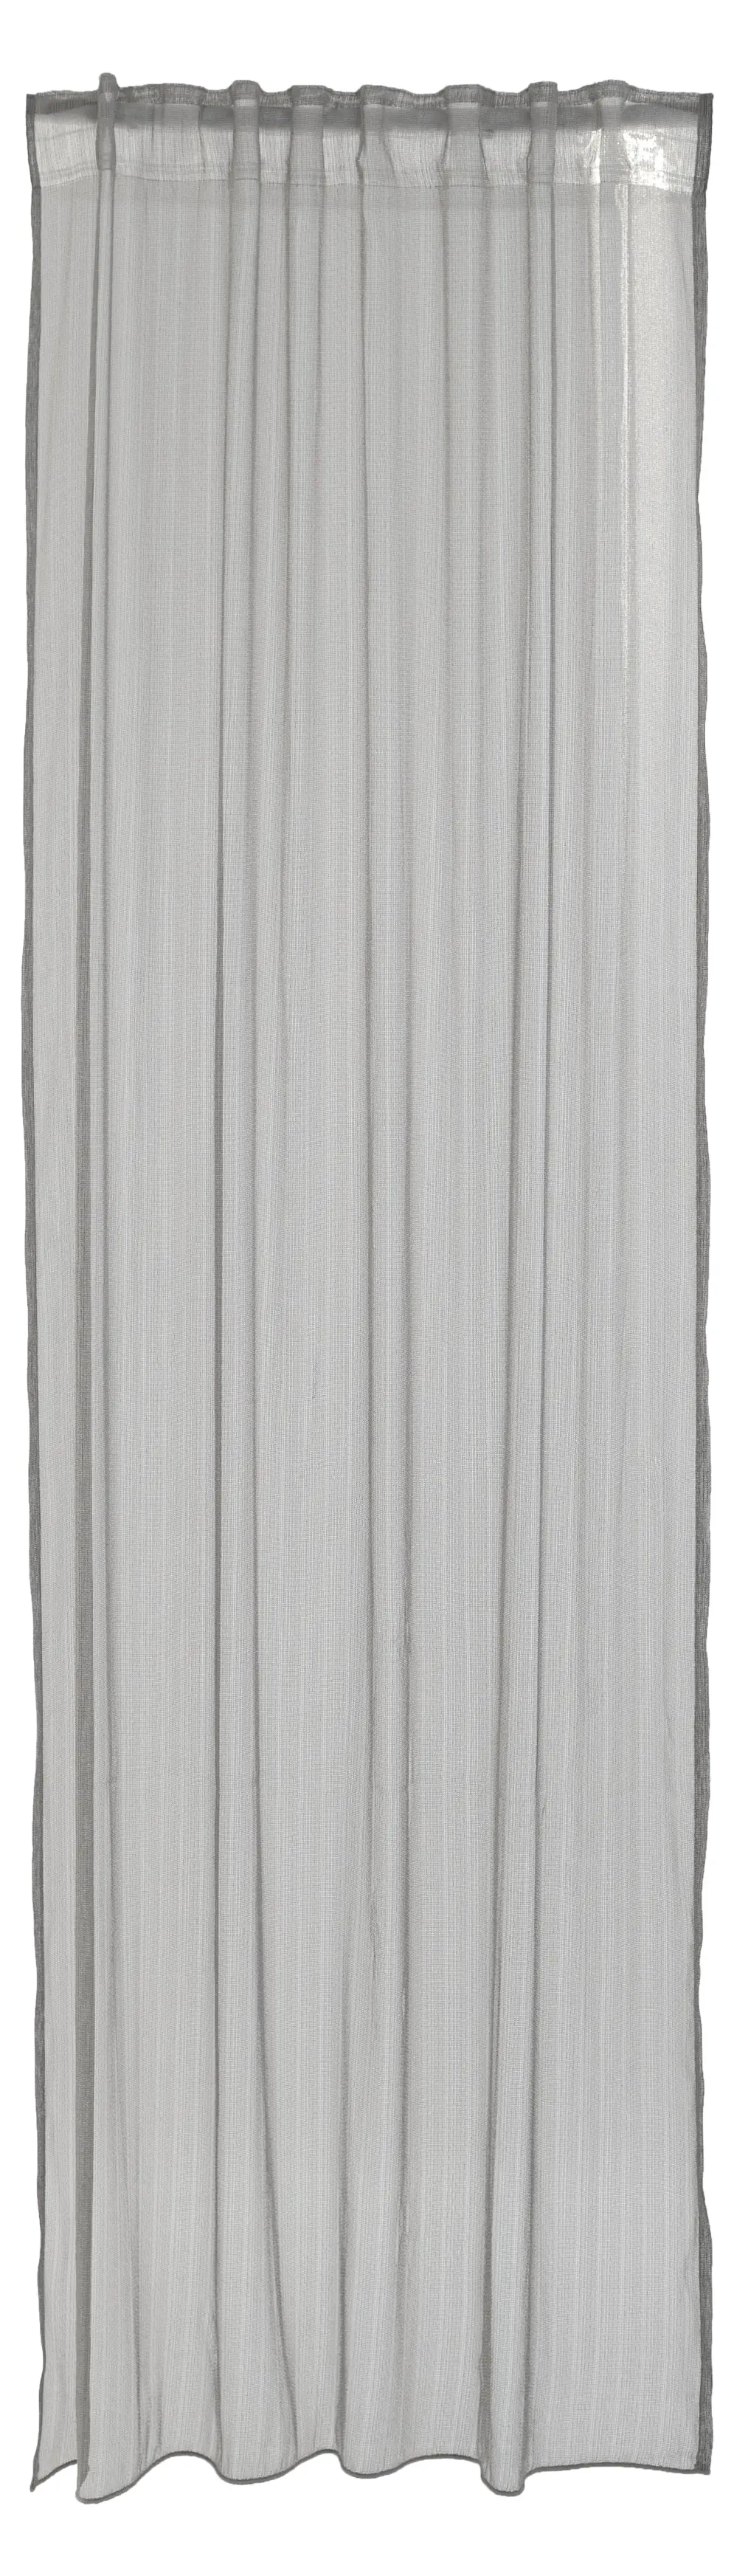 Vorhang silber streifen modern